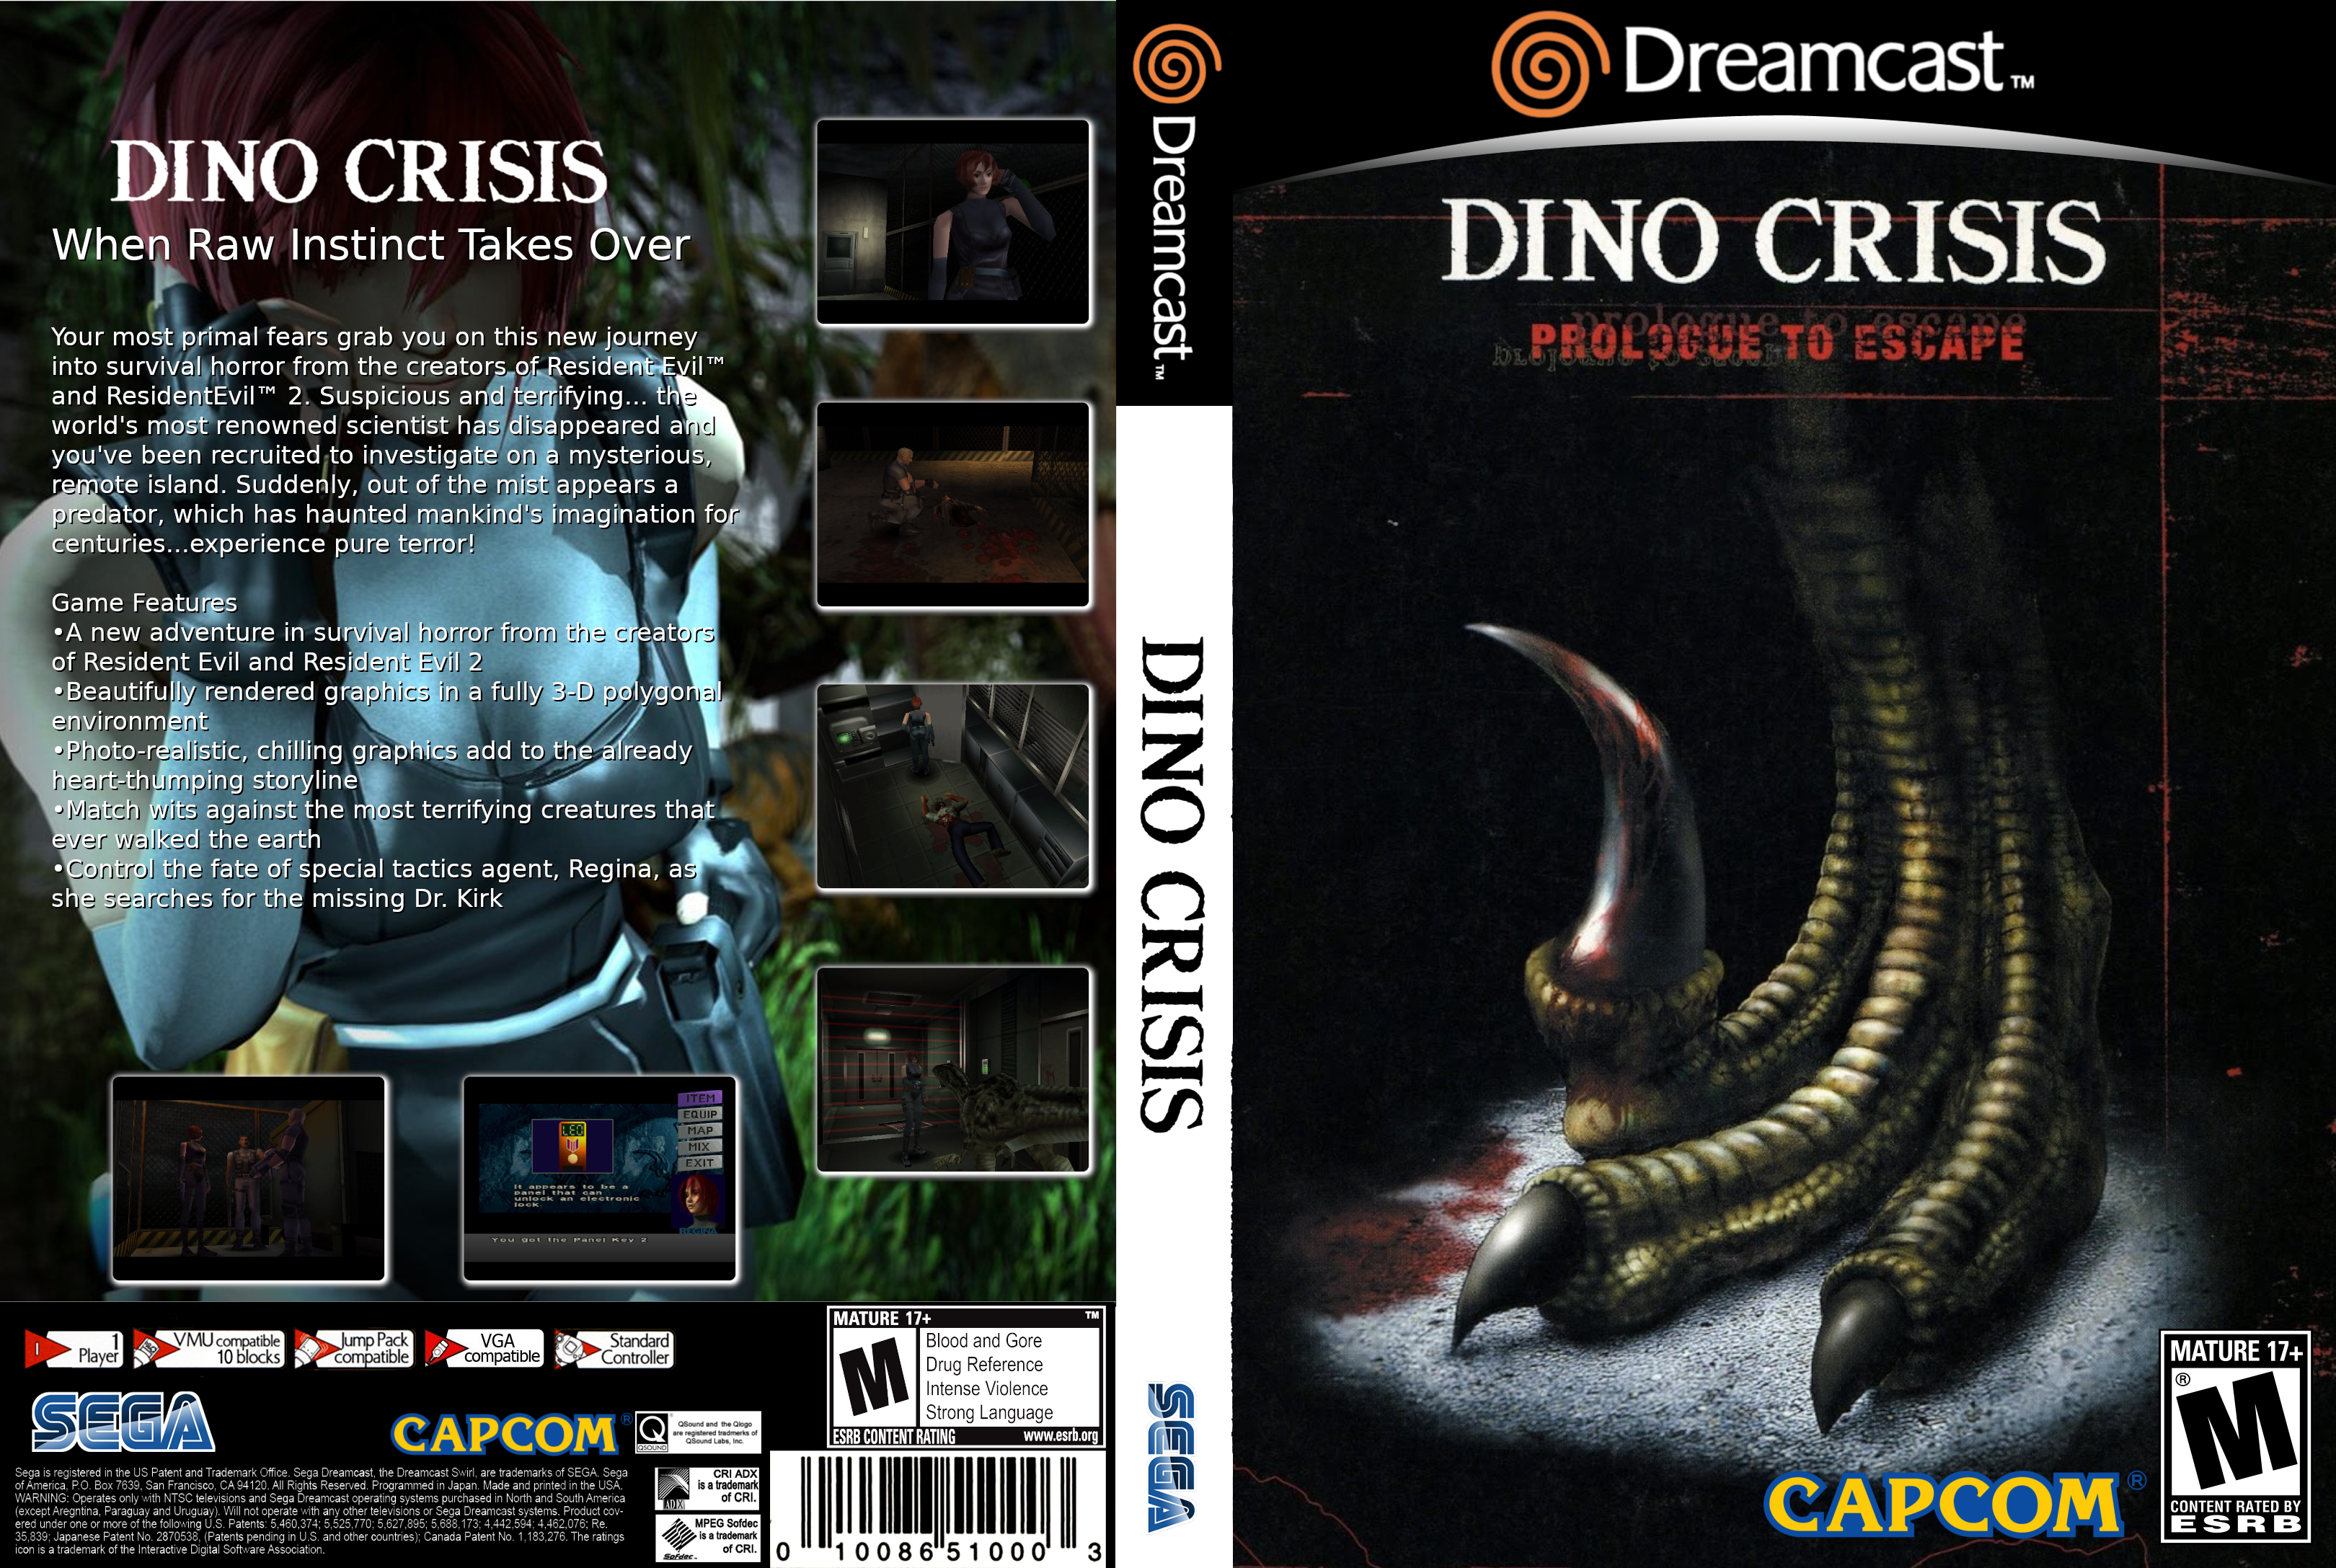 Dino_dreamcast%20USA%20V2.png